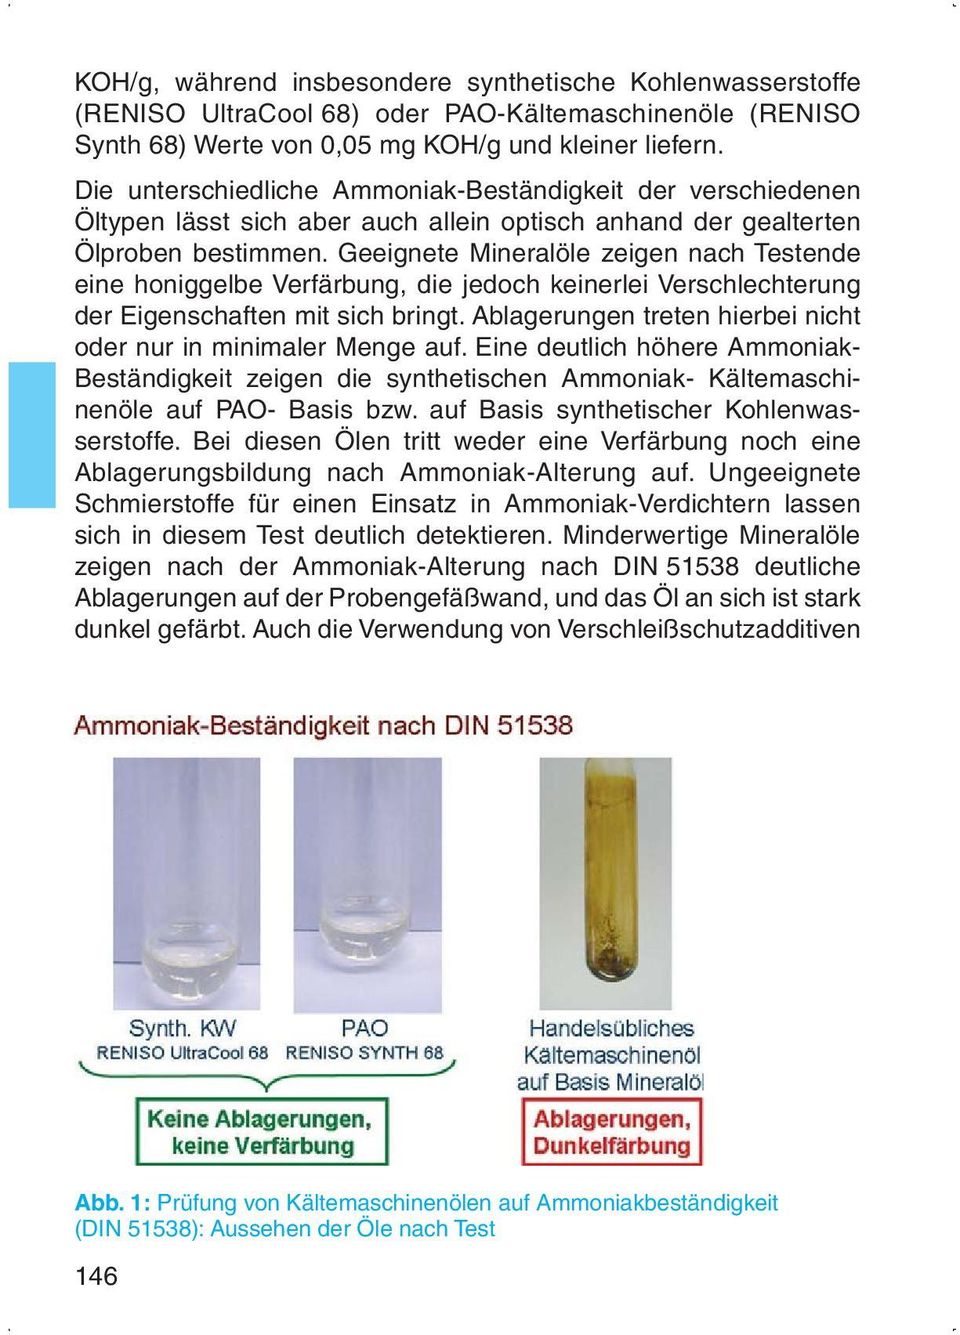 Geeignete Mineralöle zeigen nach Testende eine honiggelbe Verfärbung, die jedoch keinerlei Verschlechterung der Eigenschaften mit sich bringt.